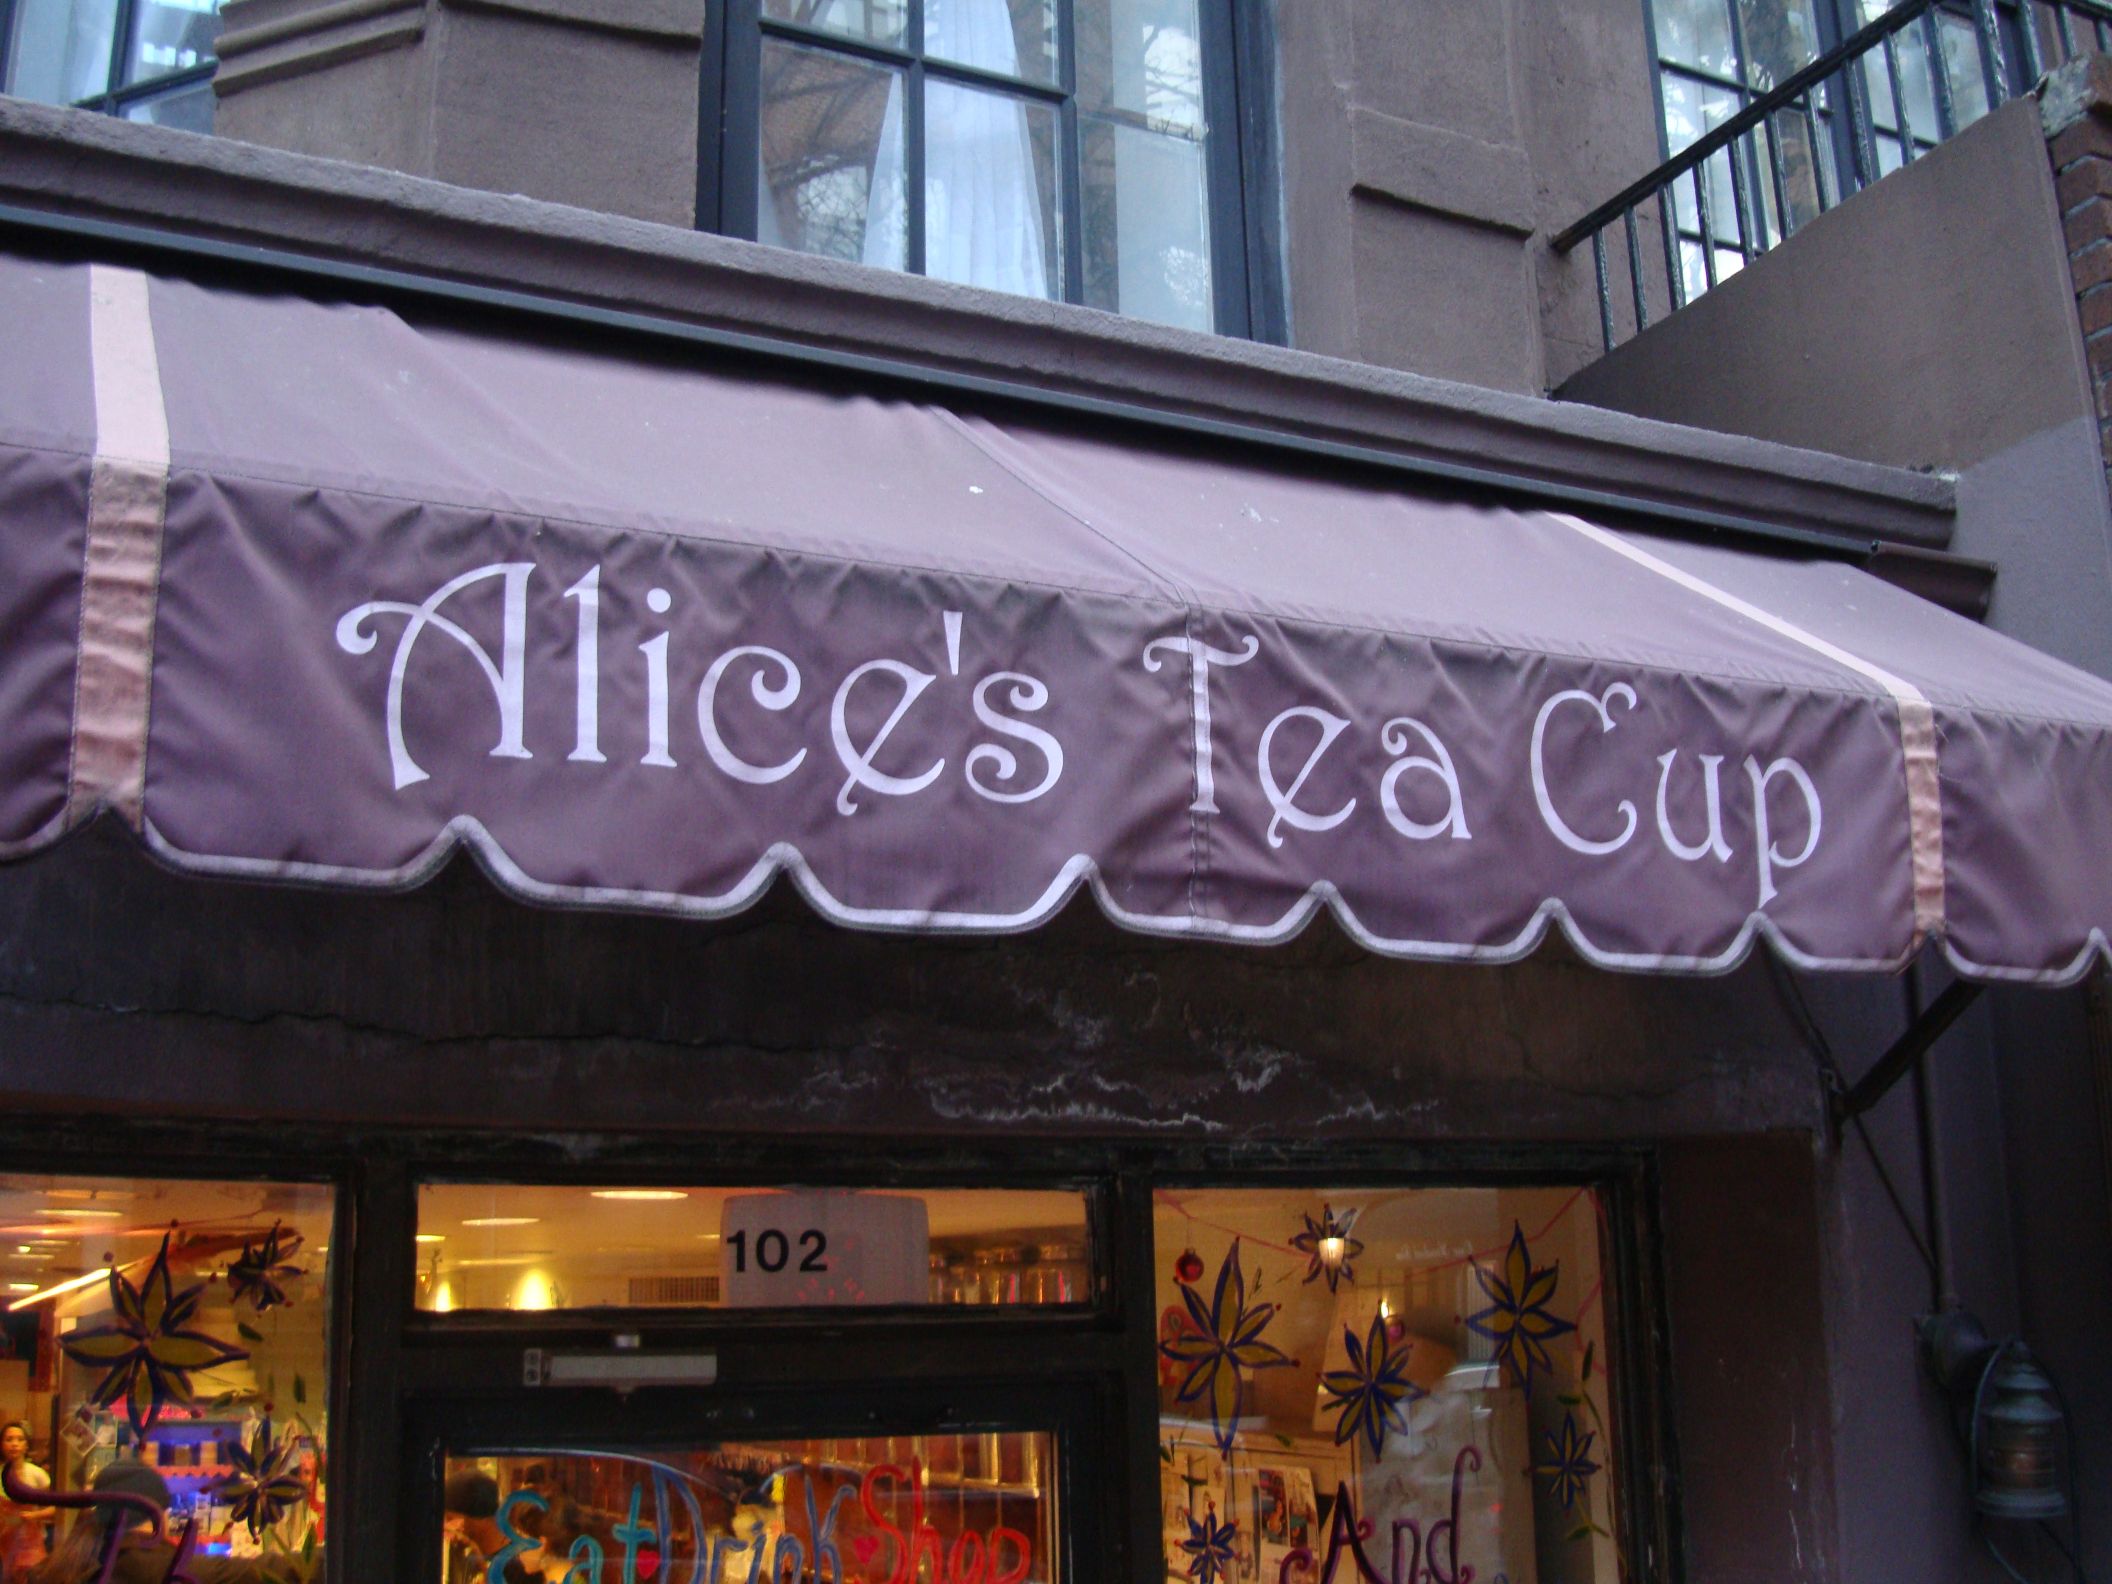 Alice's Tea Cup 